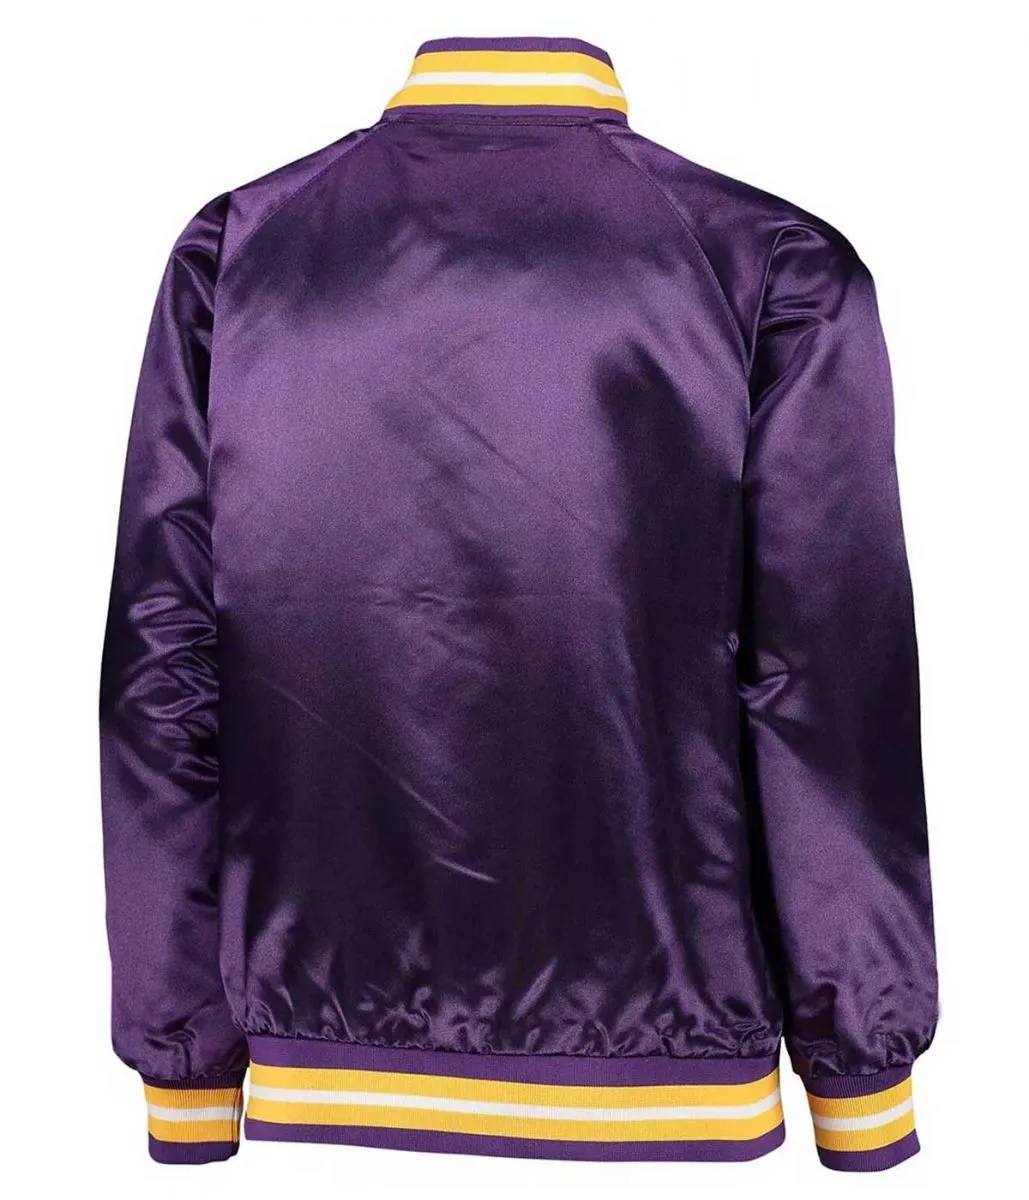 Minnesota Vikings Purple Satin Full-Snap Jacket